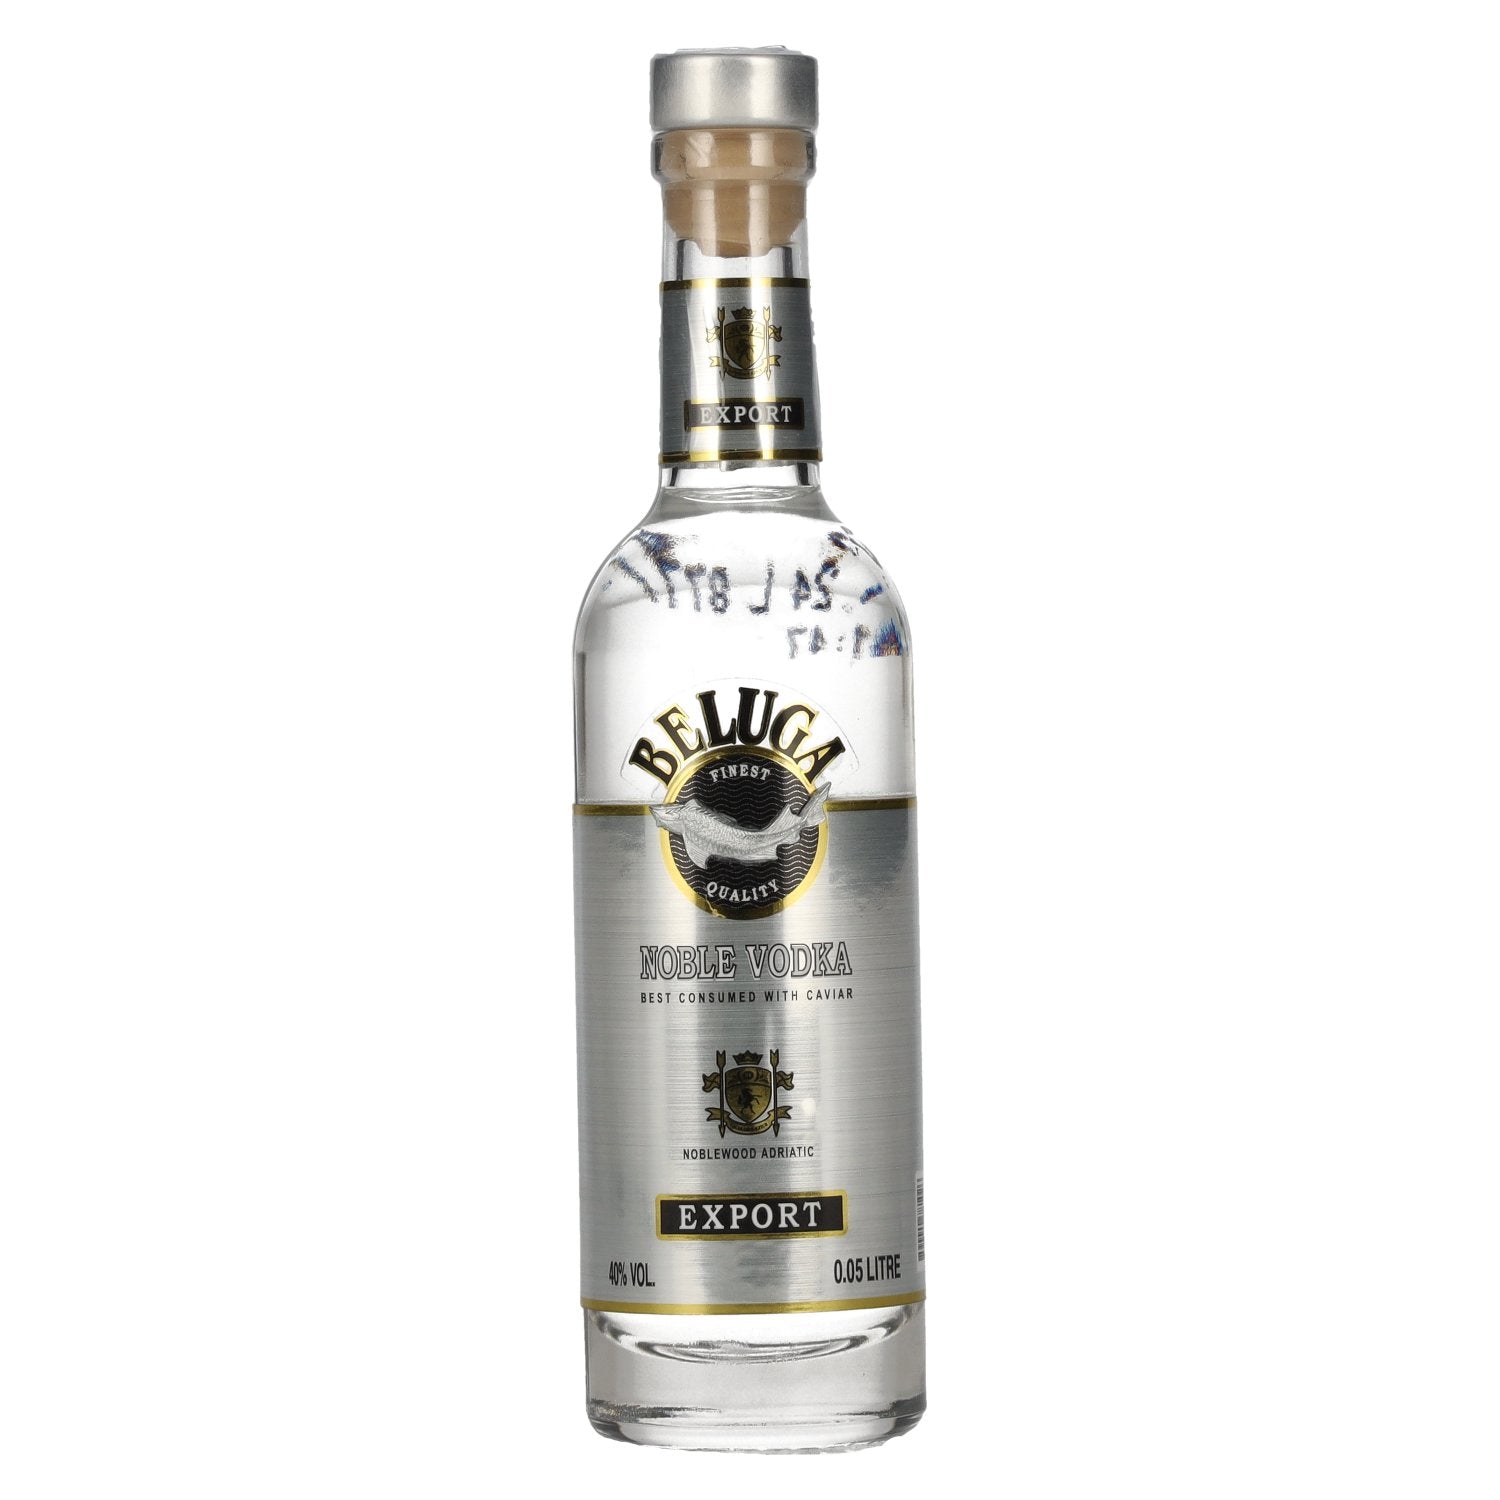 Beluga Noble Vodka EXPORT Montenegro 40% Vol. 0,05l